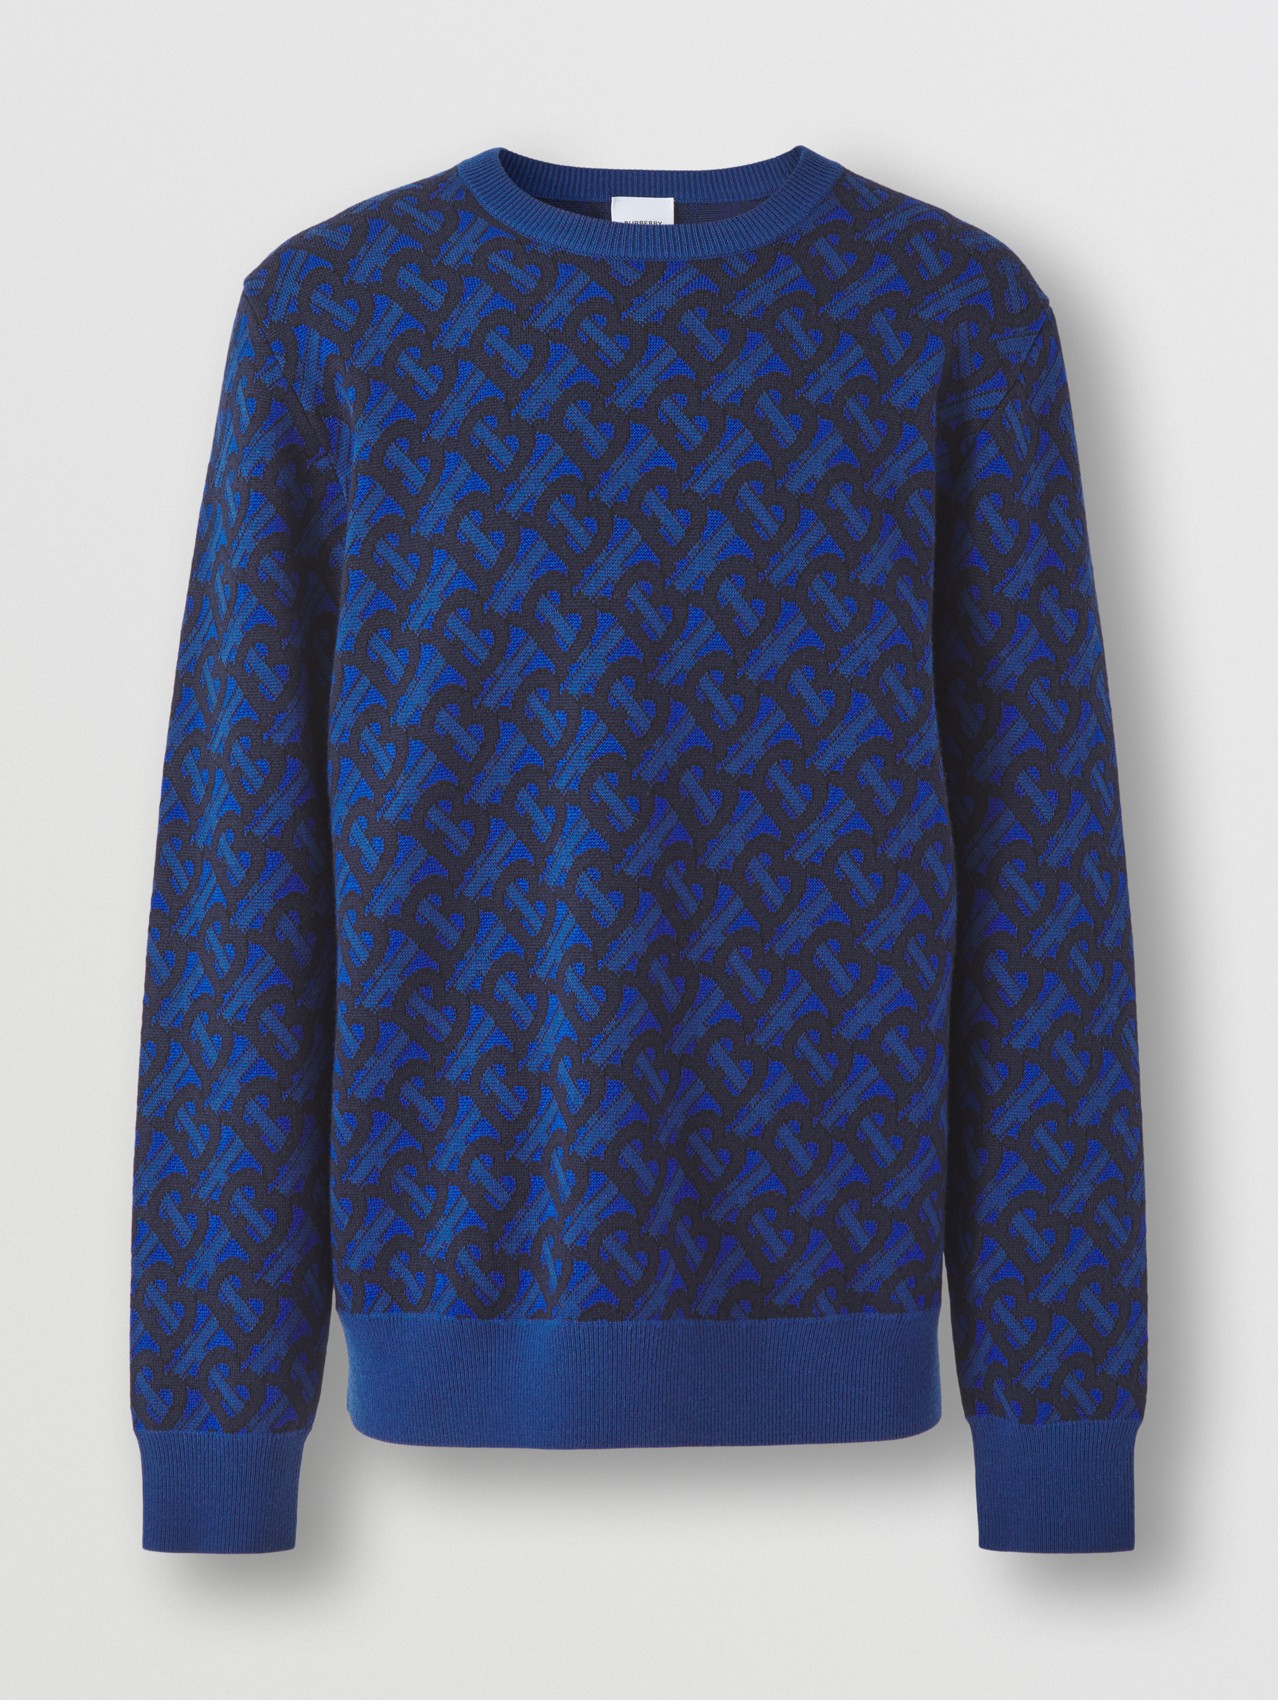 Jersey en lana con motivo de monogramas en jacquard (Azul Real)